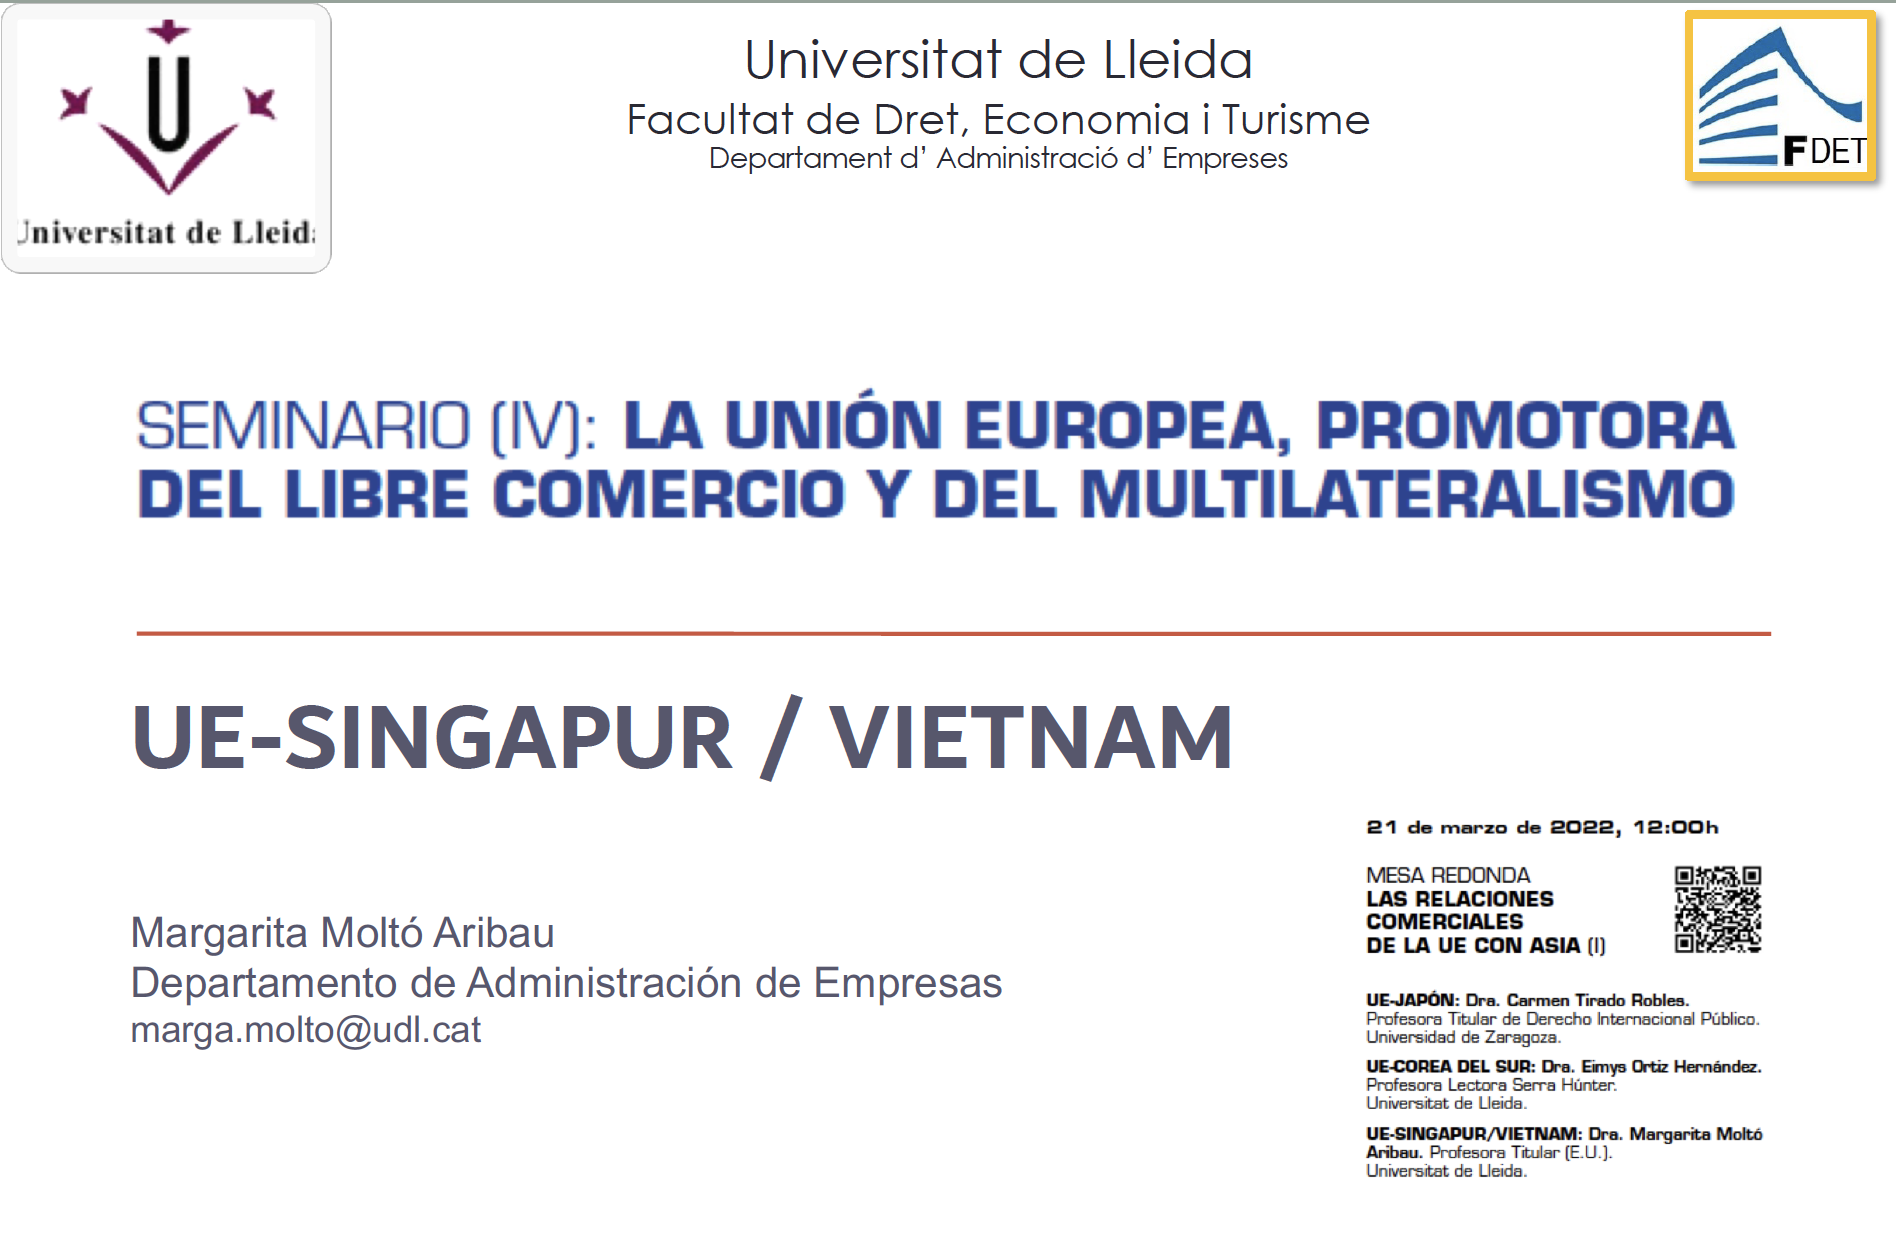 UE-Singapur / Vietnam